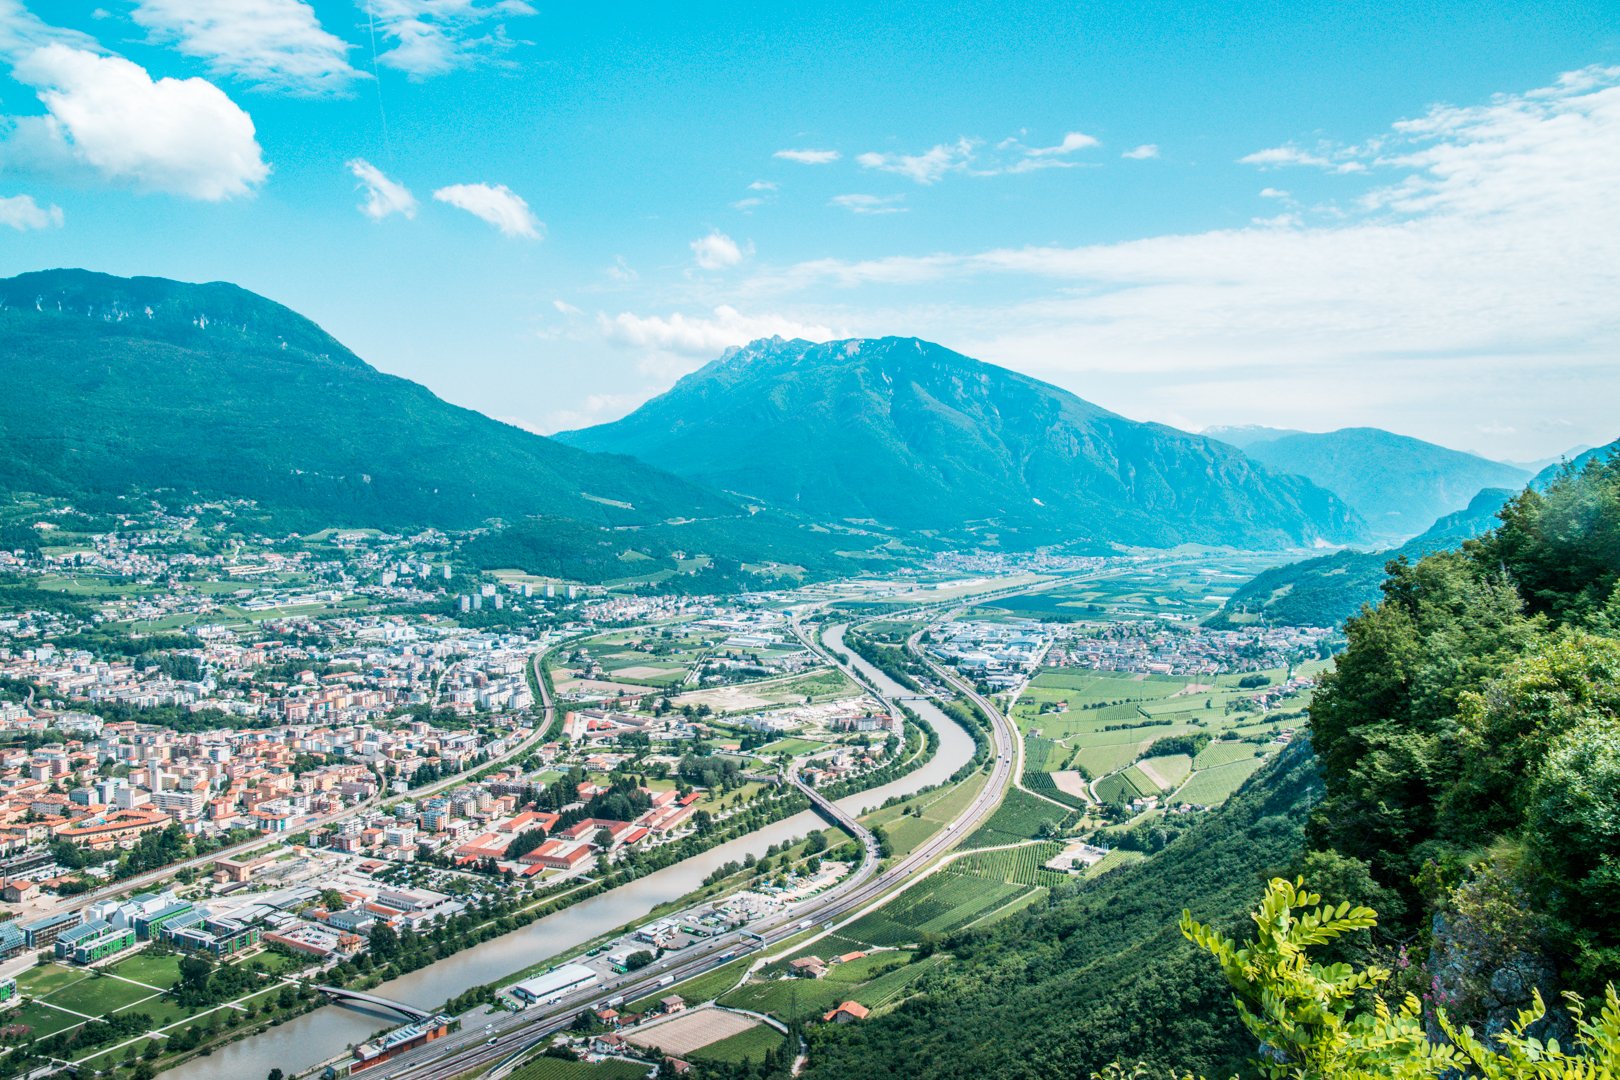 Wederom een uitzicht over Trento vanaf het panorama-terras boven op de berg. Je ziet de Aldige-rivier door het landschap kronkelen, en op de achtergrond bergen die zo hoog zijn dat ze tot de wolken rijken. Links in de hoek zie je nog een deel van Trento. 